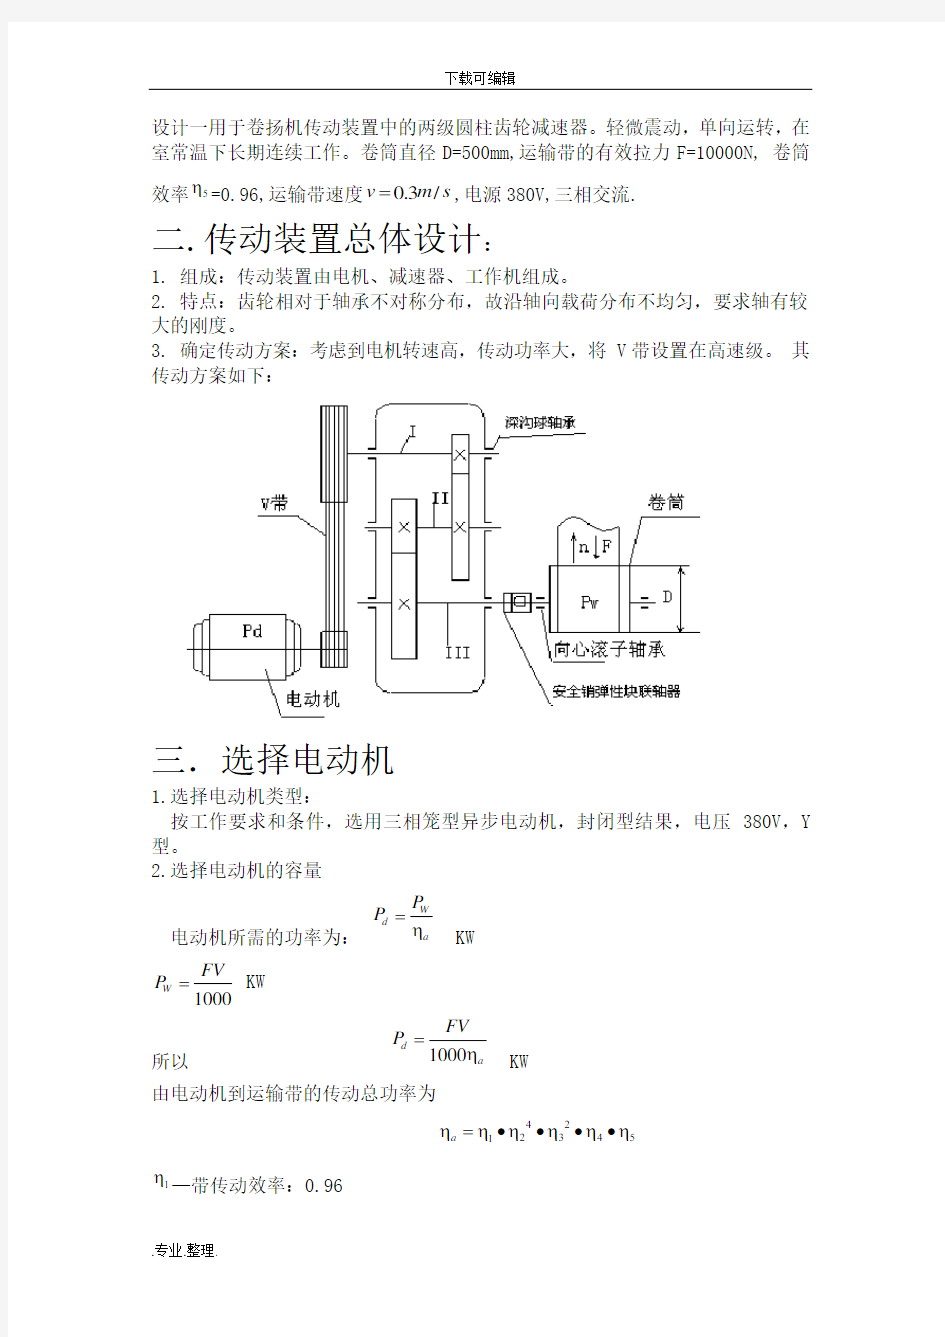 机械设计课程设计_二级展开式圆柱齿轮减速器(含全套图纸)